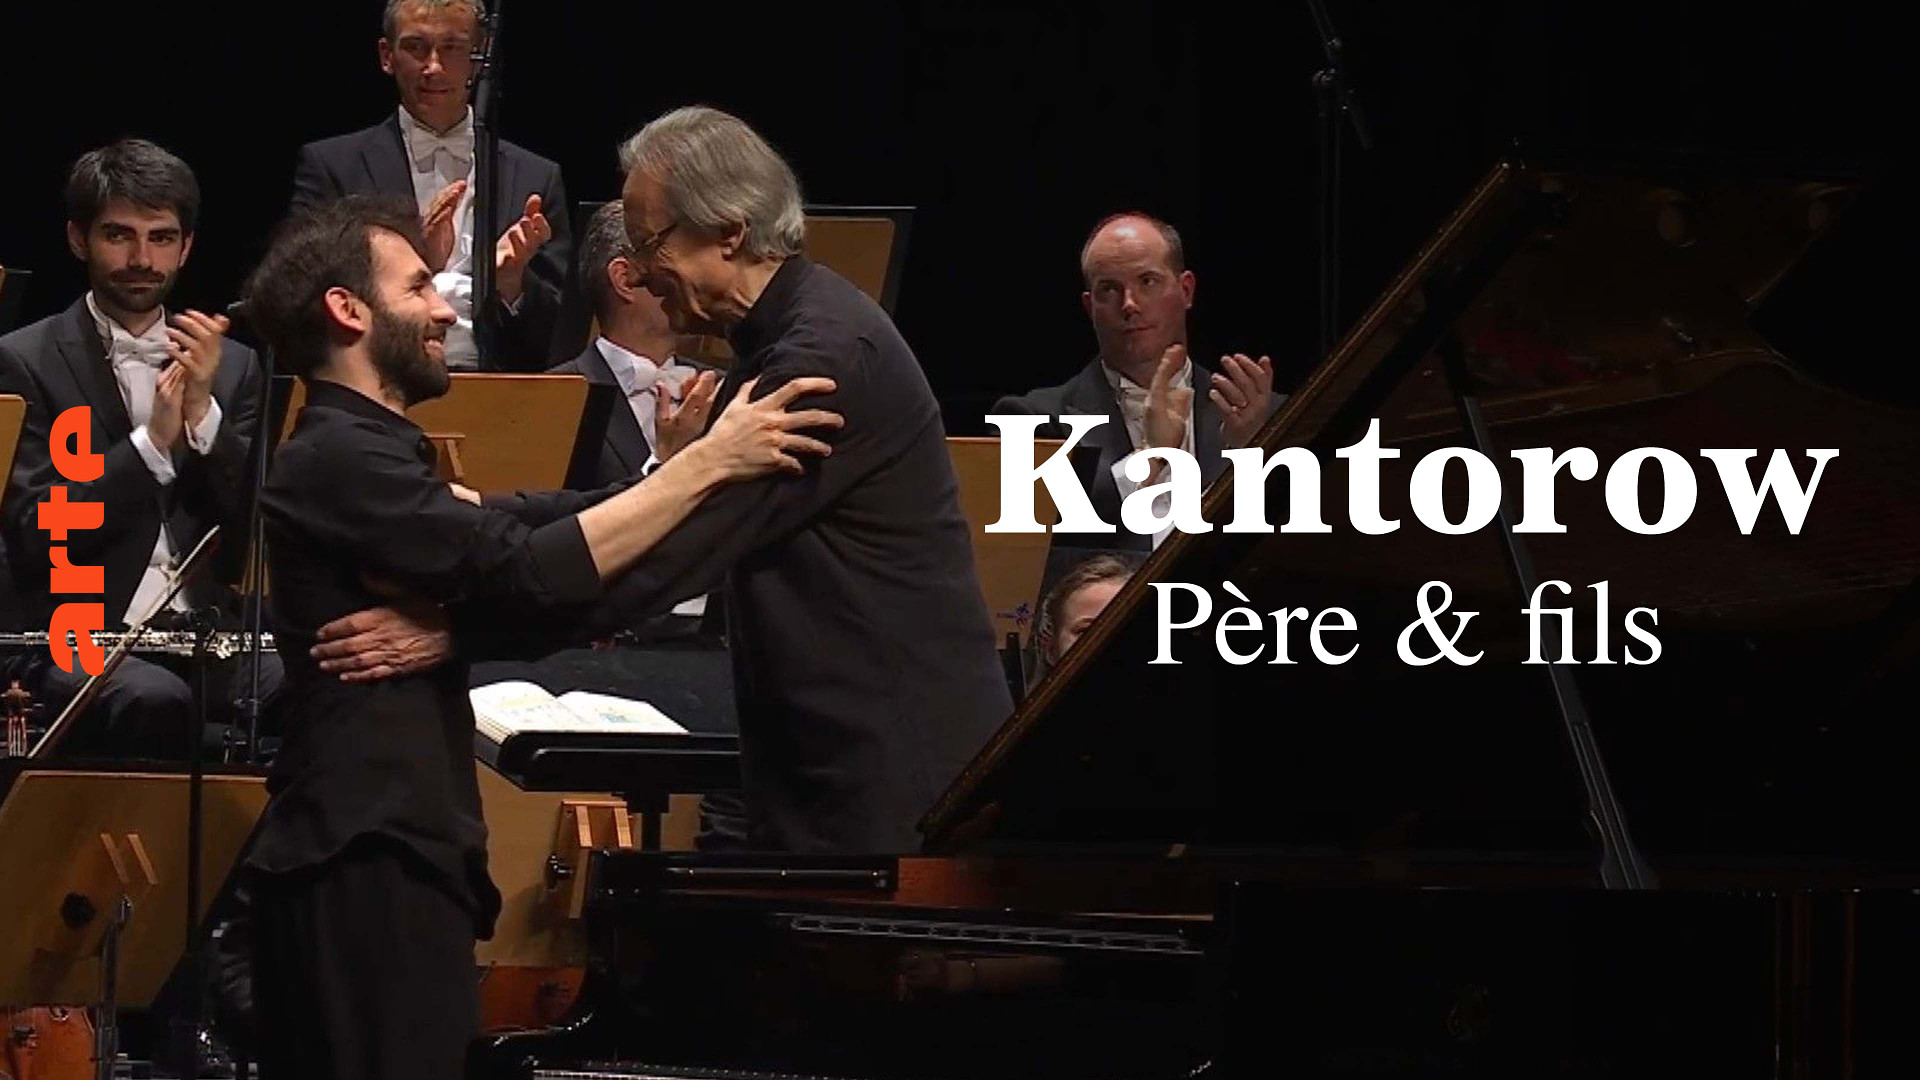 Kantorow père et fils interprètent Brahms - Avec l'Orchestre de Chambre de Lausanne - Regarder le programme complet | ARTE Concert